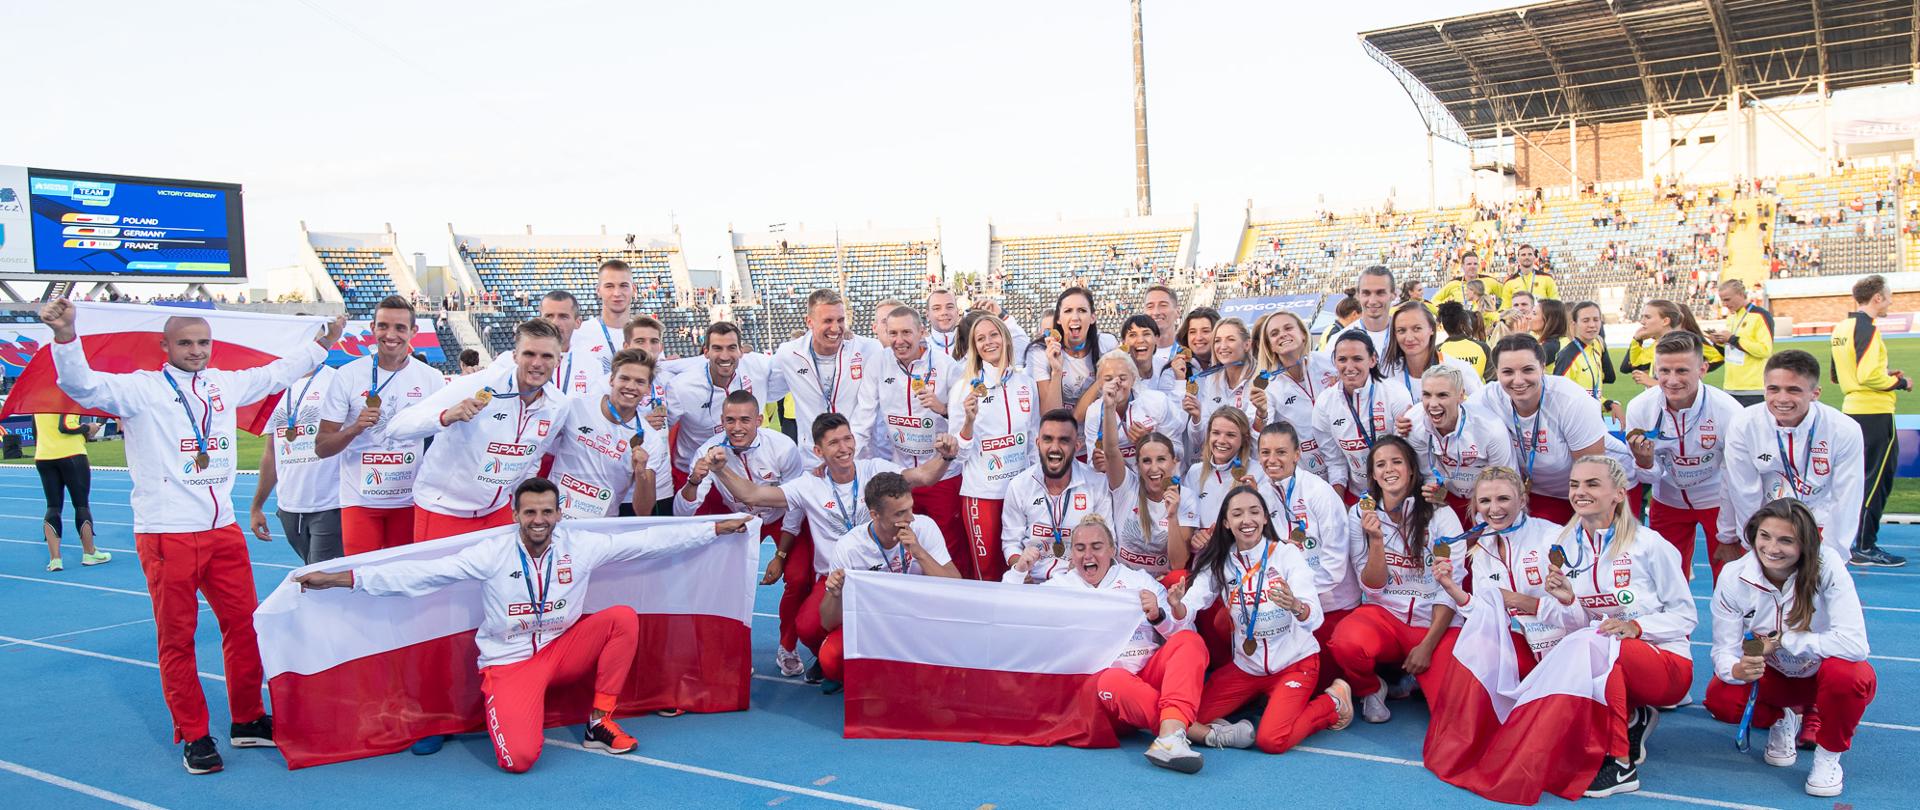 Polacy będą bronić tytułu Drużynowych Mistrzów Europy w lekkoatletyce fot. Marek Biczyk, Tomasz Kasjaniuk / PZLA